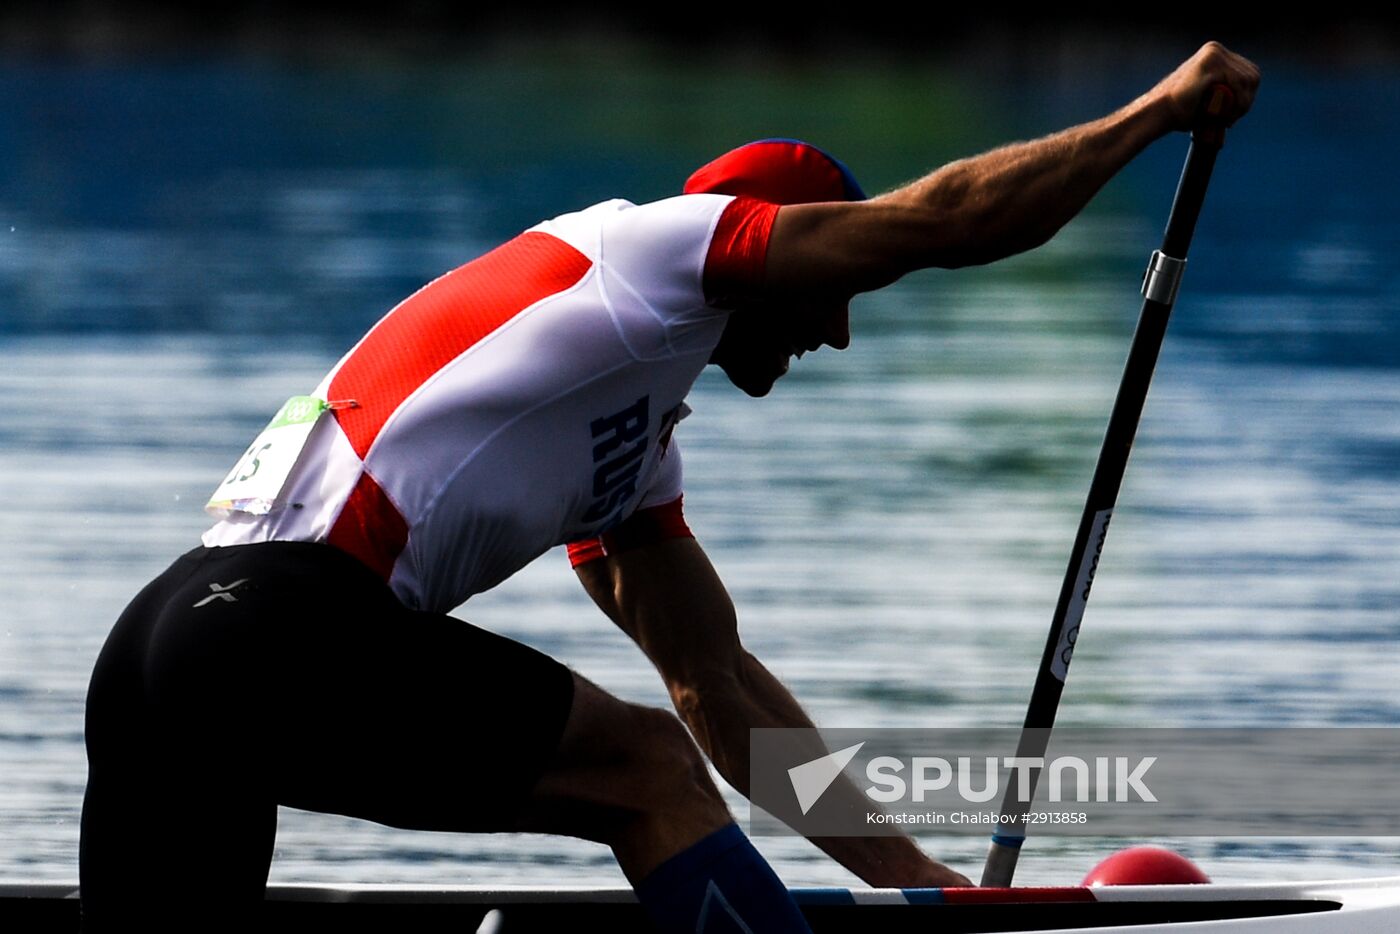 2016 Summer Olympics. Canoe sprint